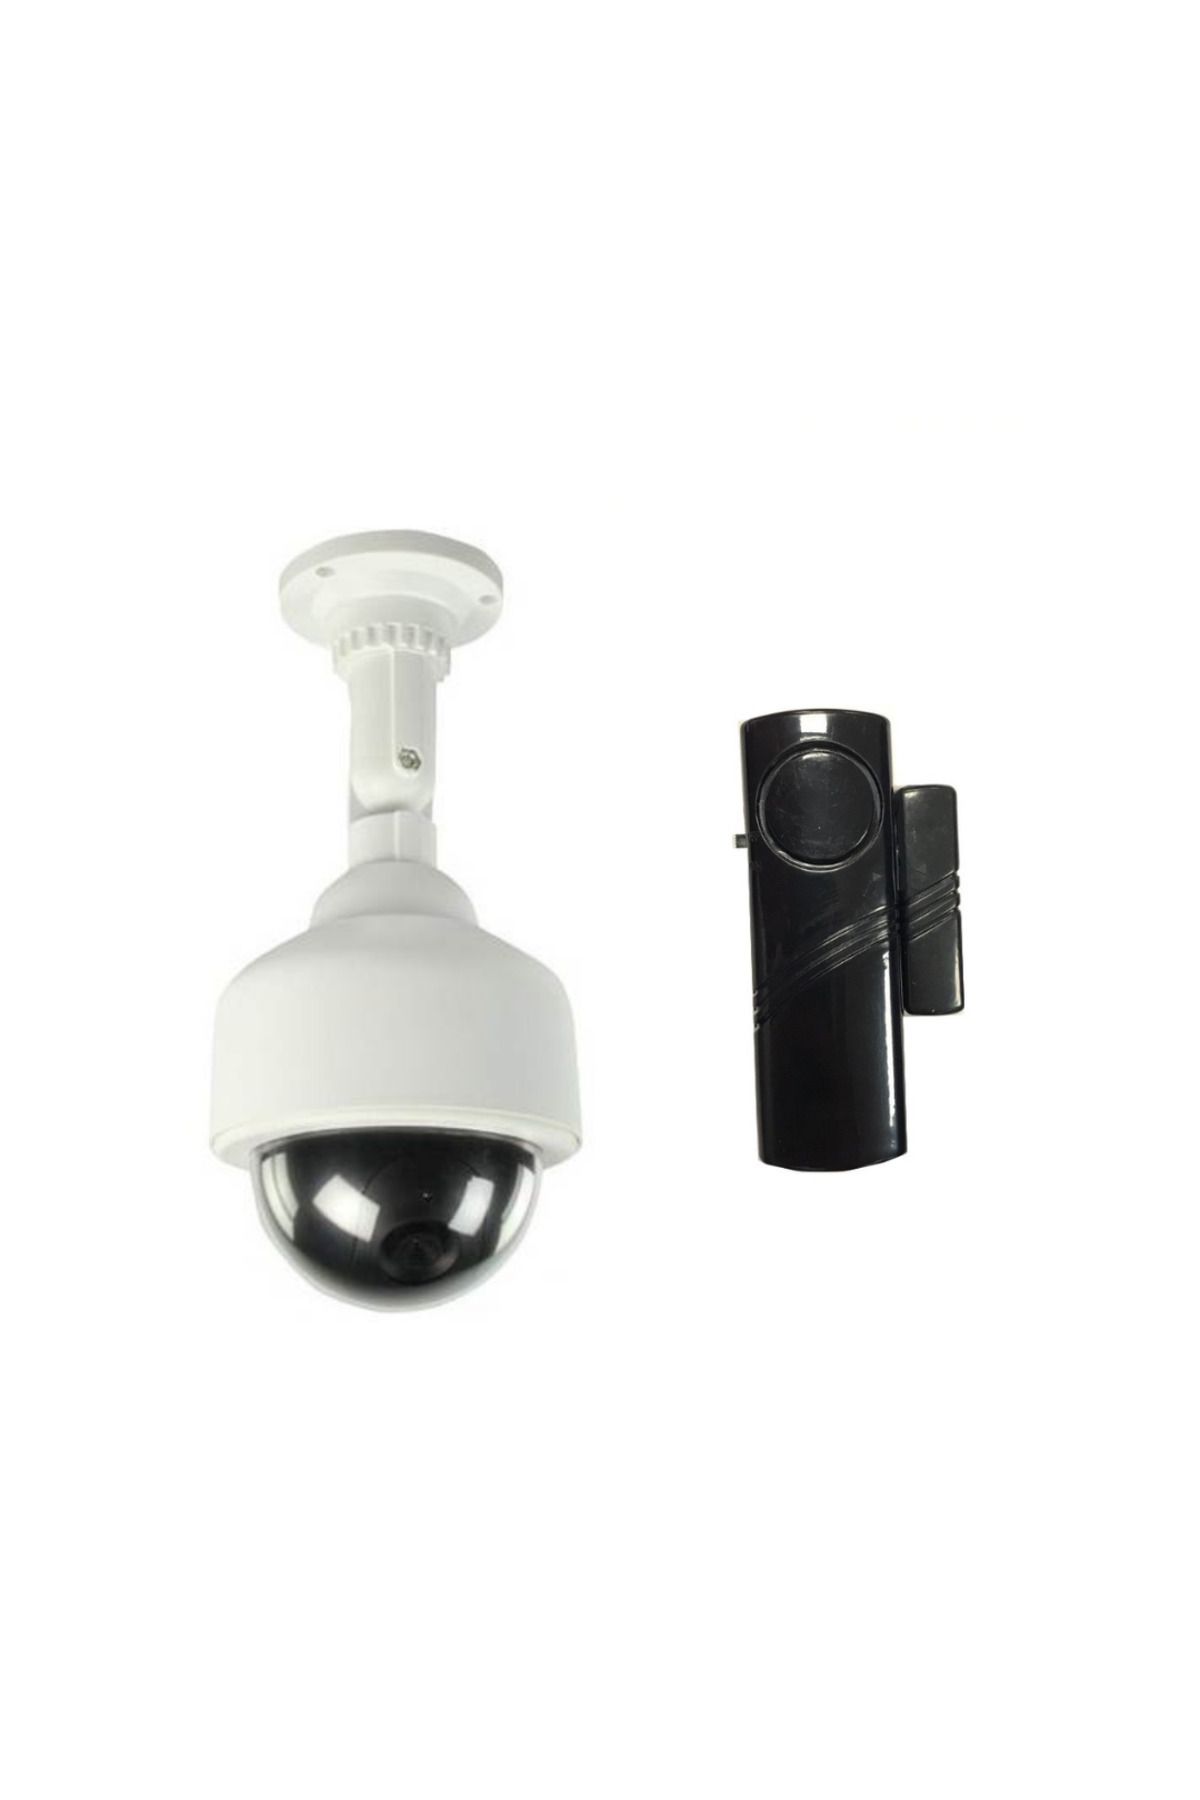 LOREX Hırsız Alarm Seti : Lorex Siyah Pencere Alarmı ve MOBESE Görünümlü Caydırıcı Kamera